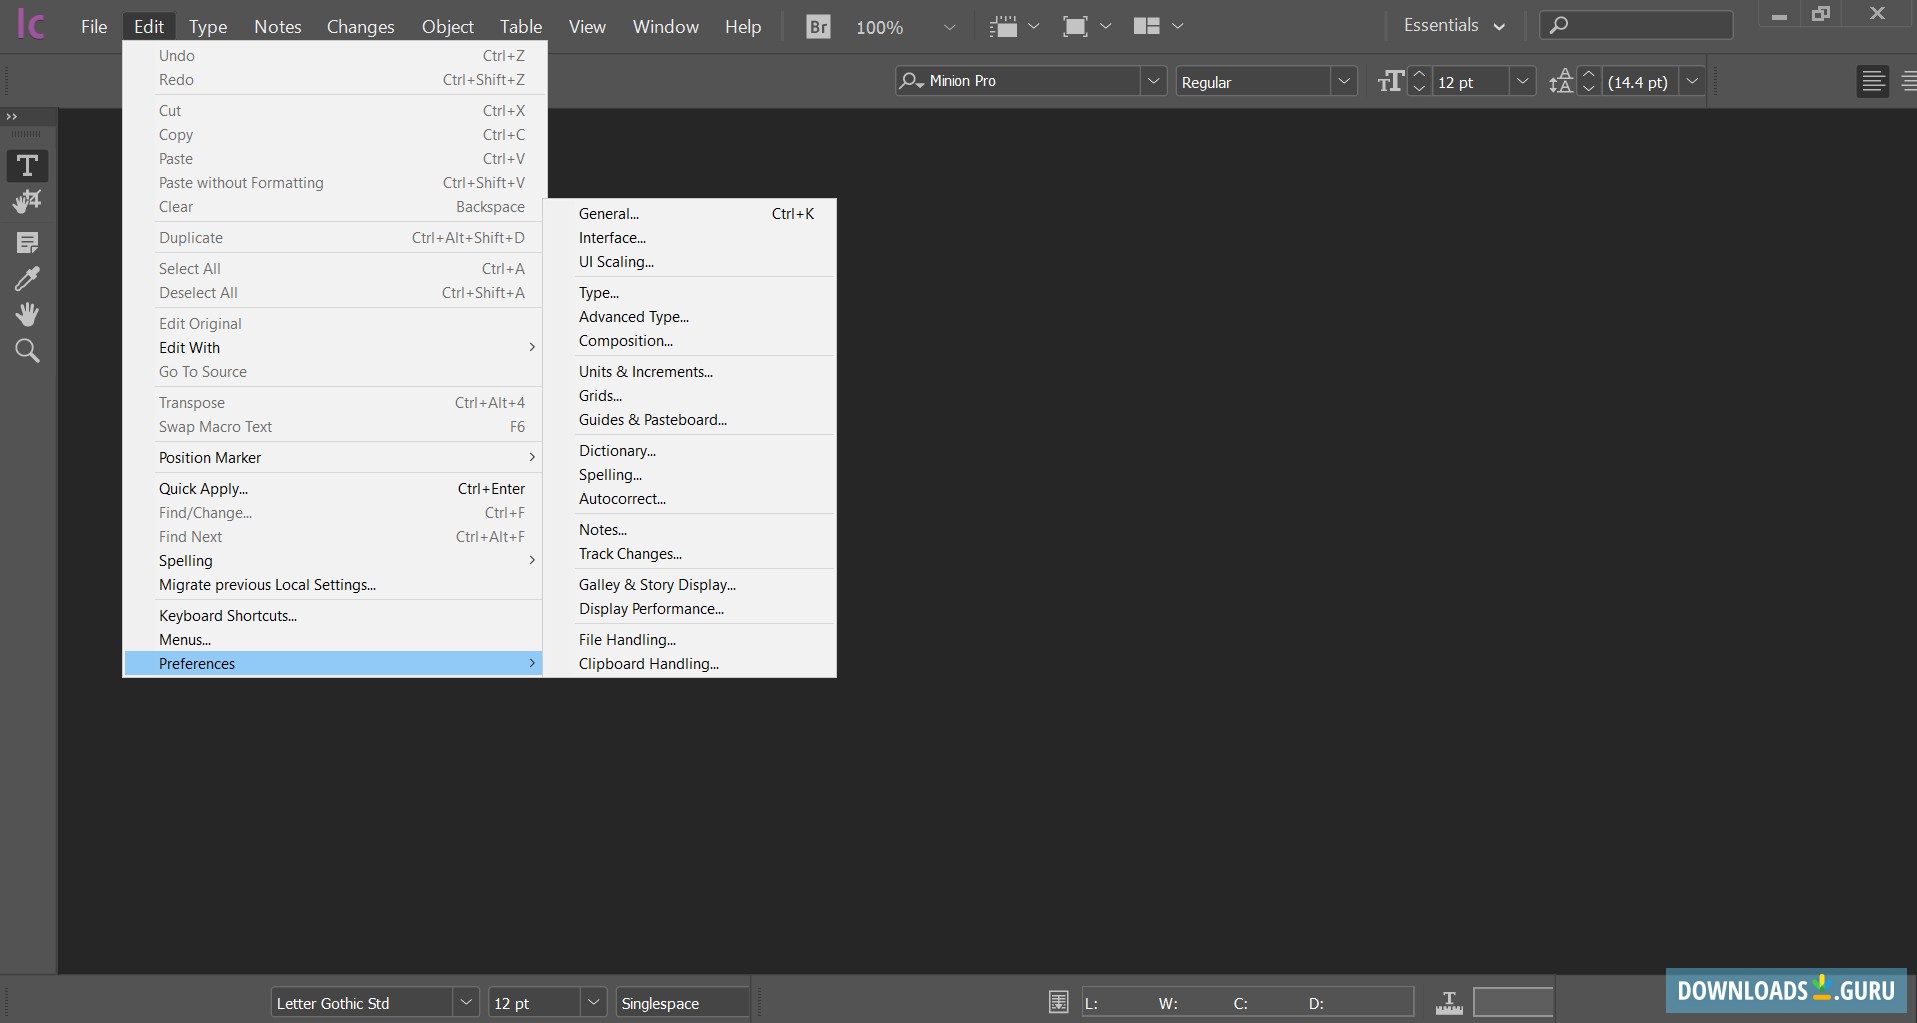 download the last version for mac Adobe InCopy 2023 v18.5.0.57